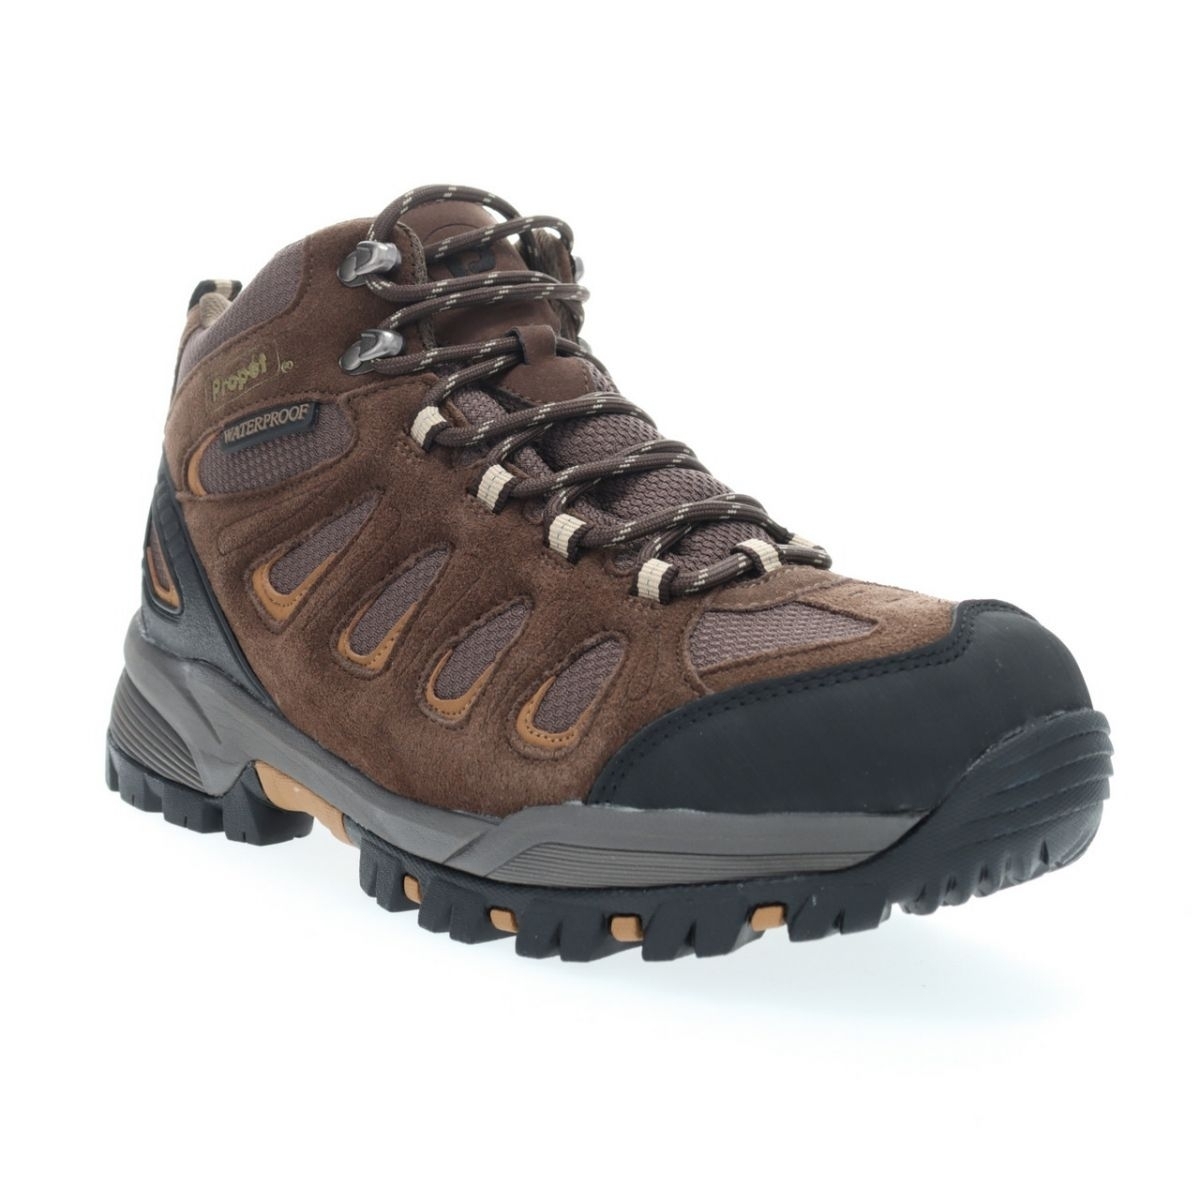 Propet Men's Ridge Walker Hiking Boot Brown - M3599BR 8 XX US Men BROWN - BROWN, 14 XX-Wide